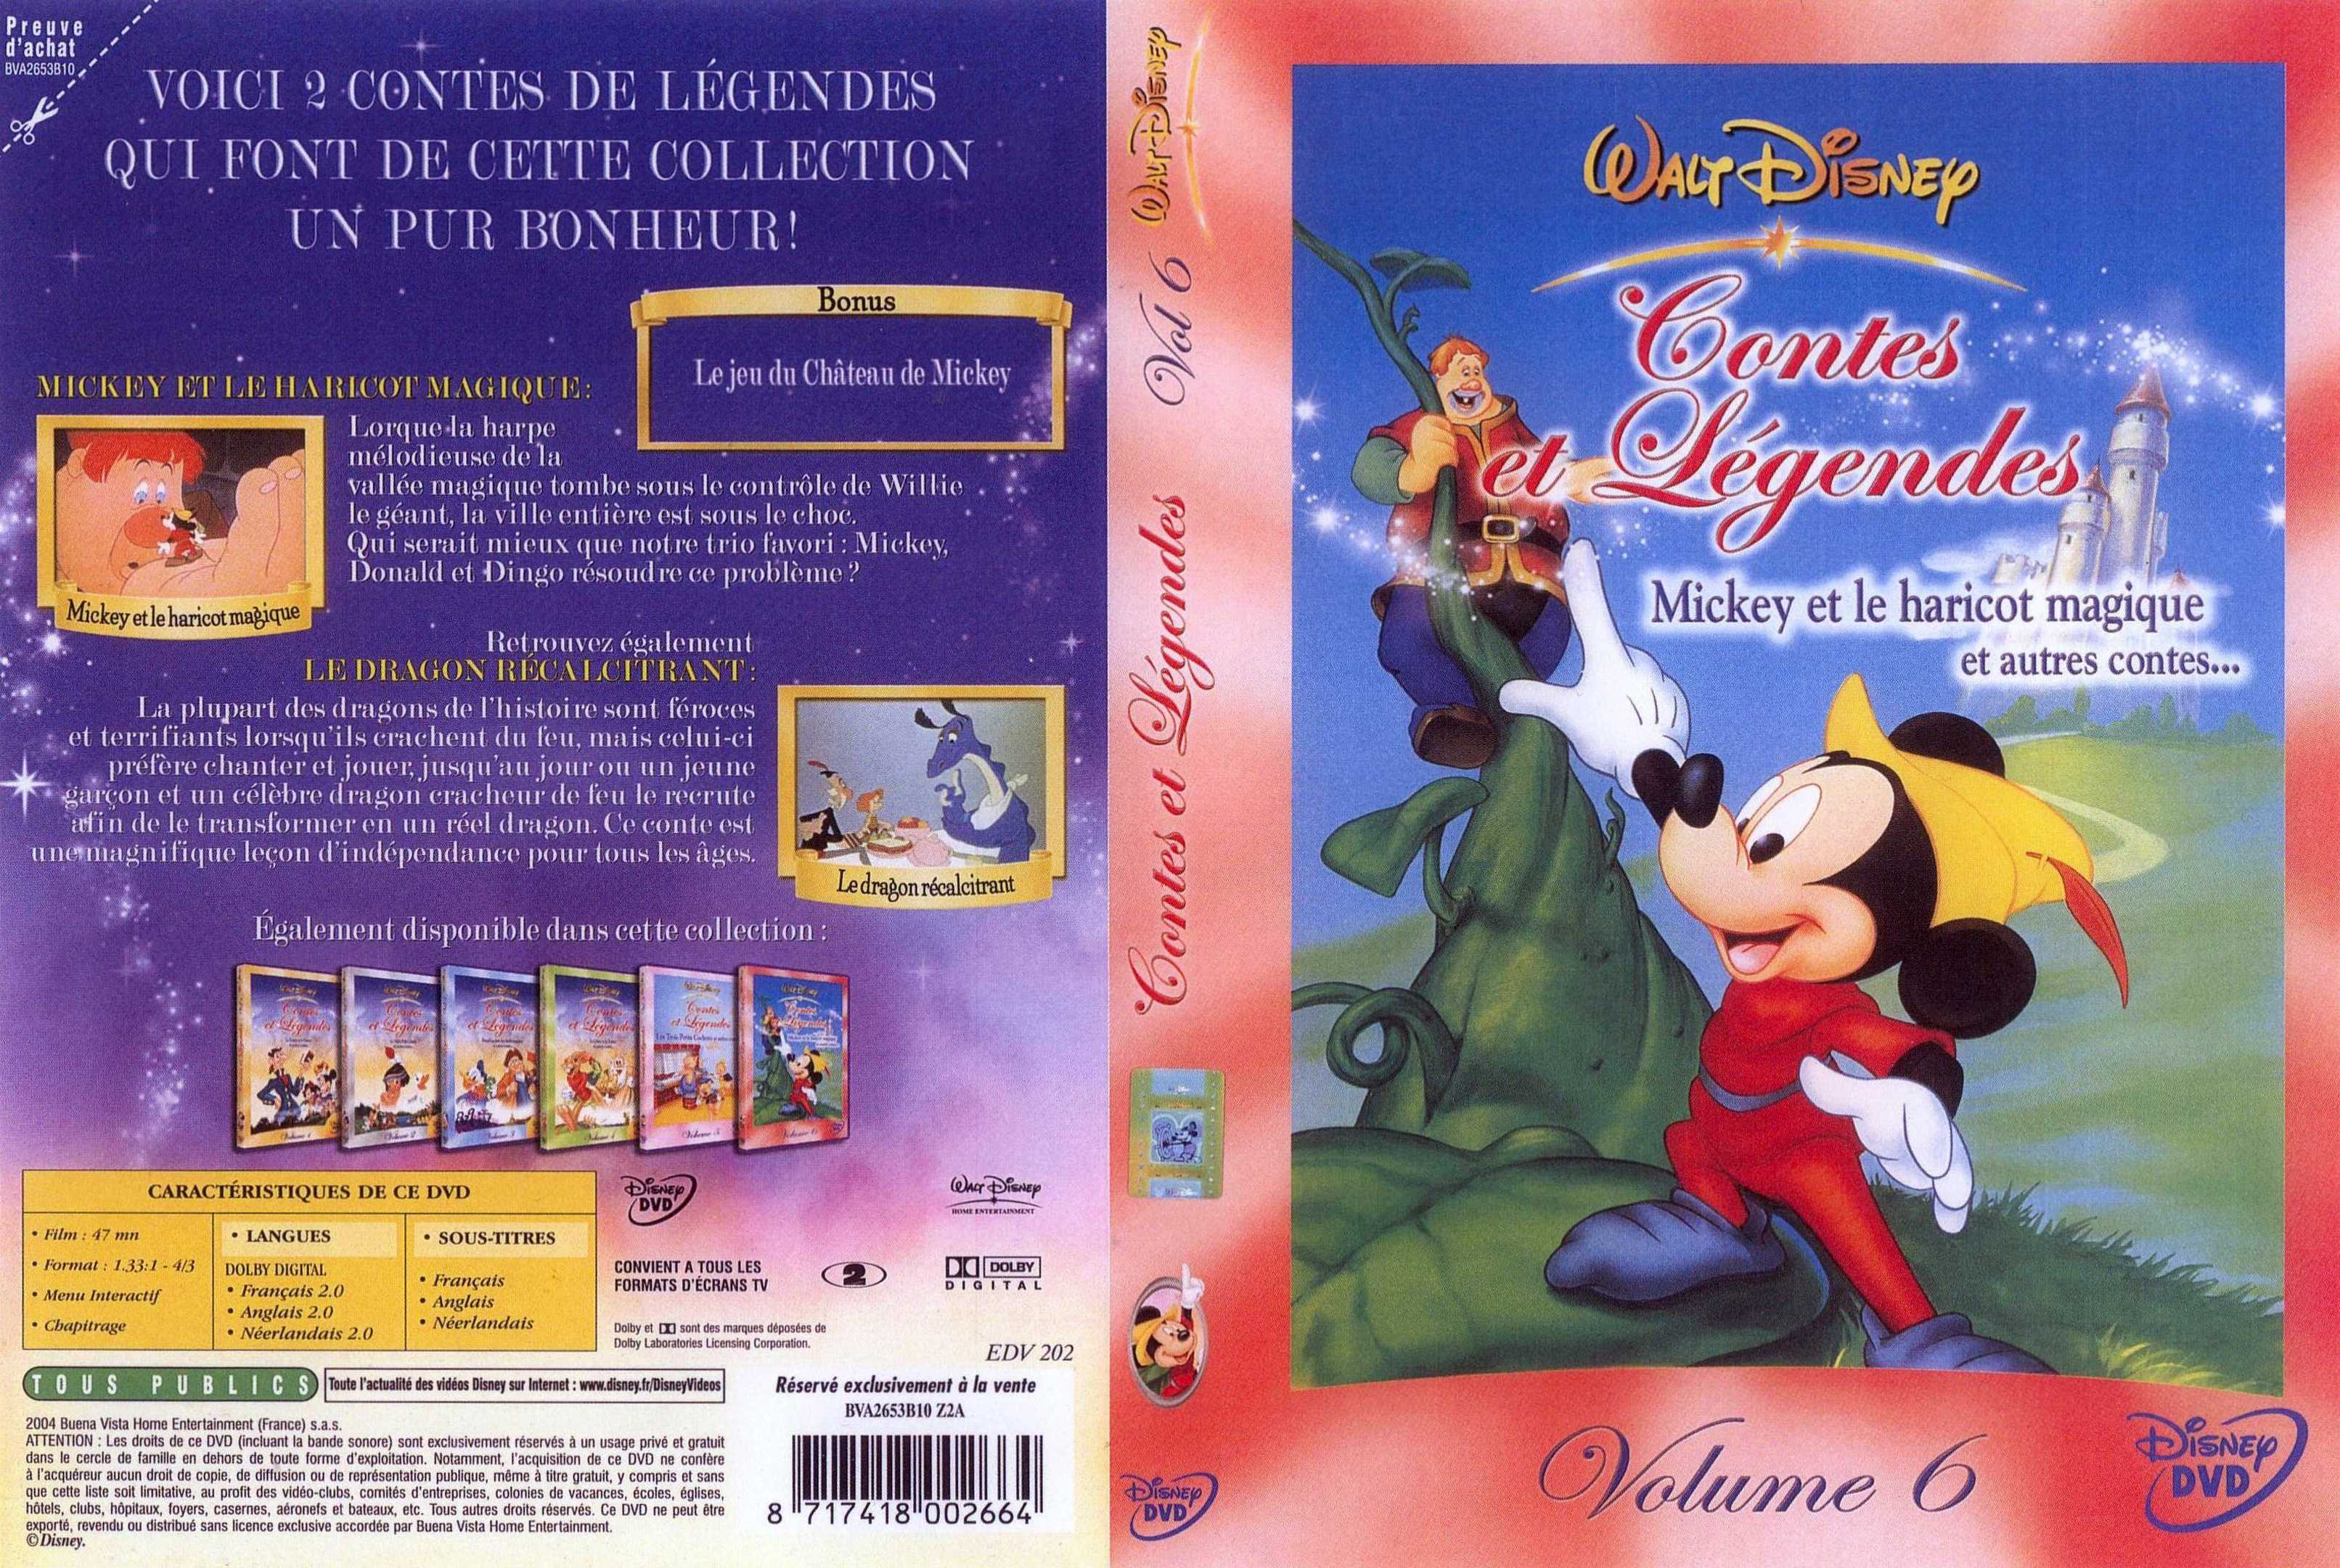 Jaquette DVD Contes et legendes 6 v2